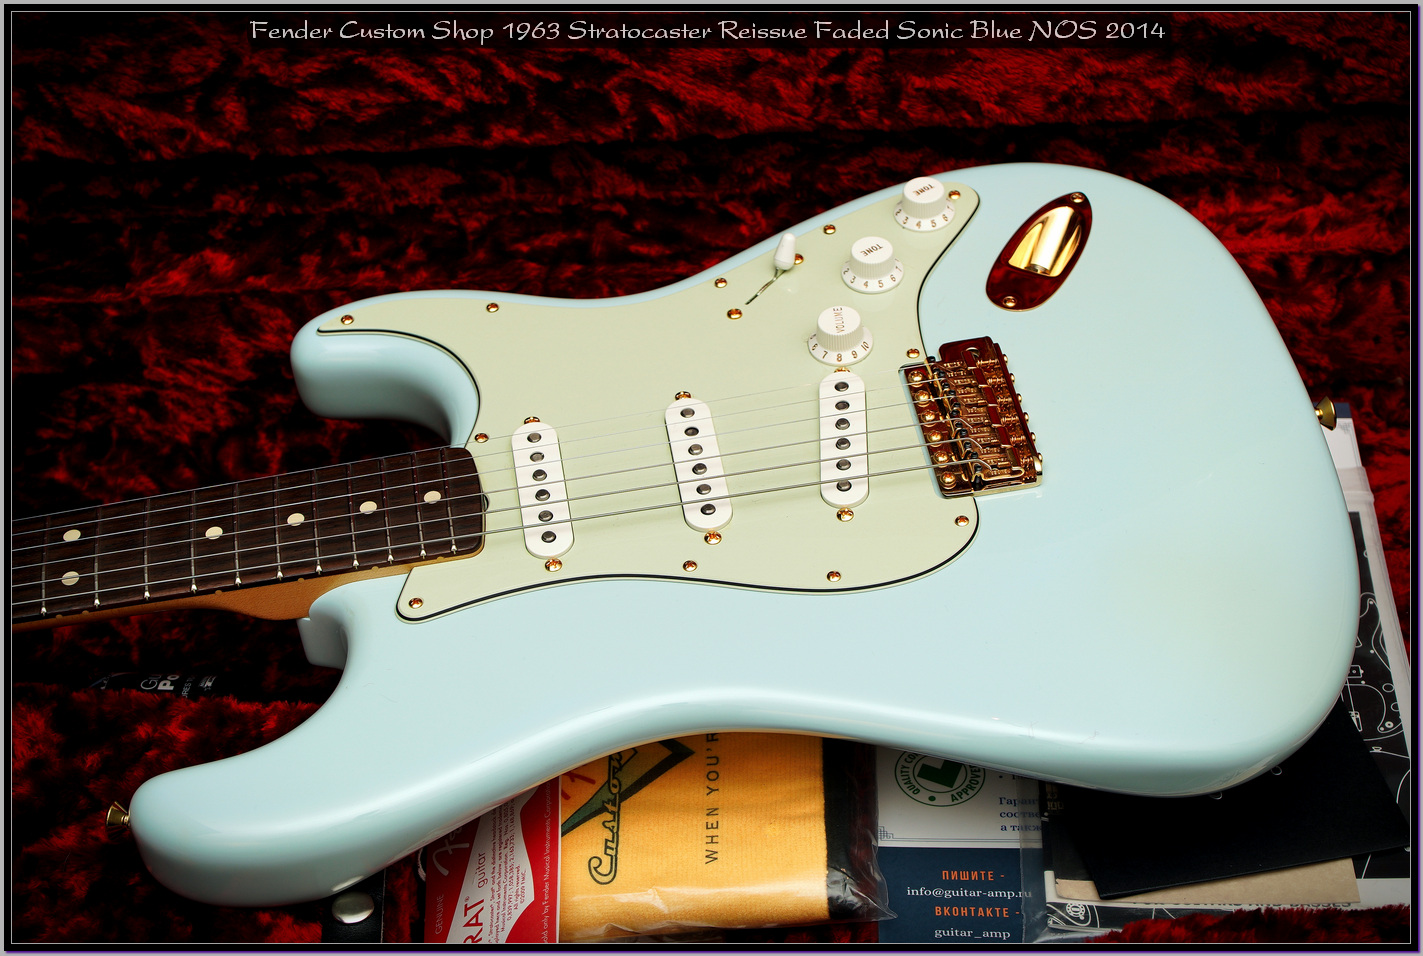 Fender Custom Shop 1963 Stratocaster Reissue Faded Sonic Blue NOS 2014 23_x1400.jpg